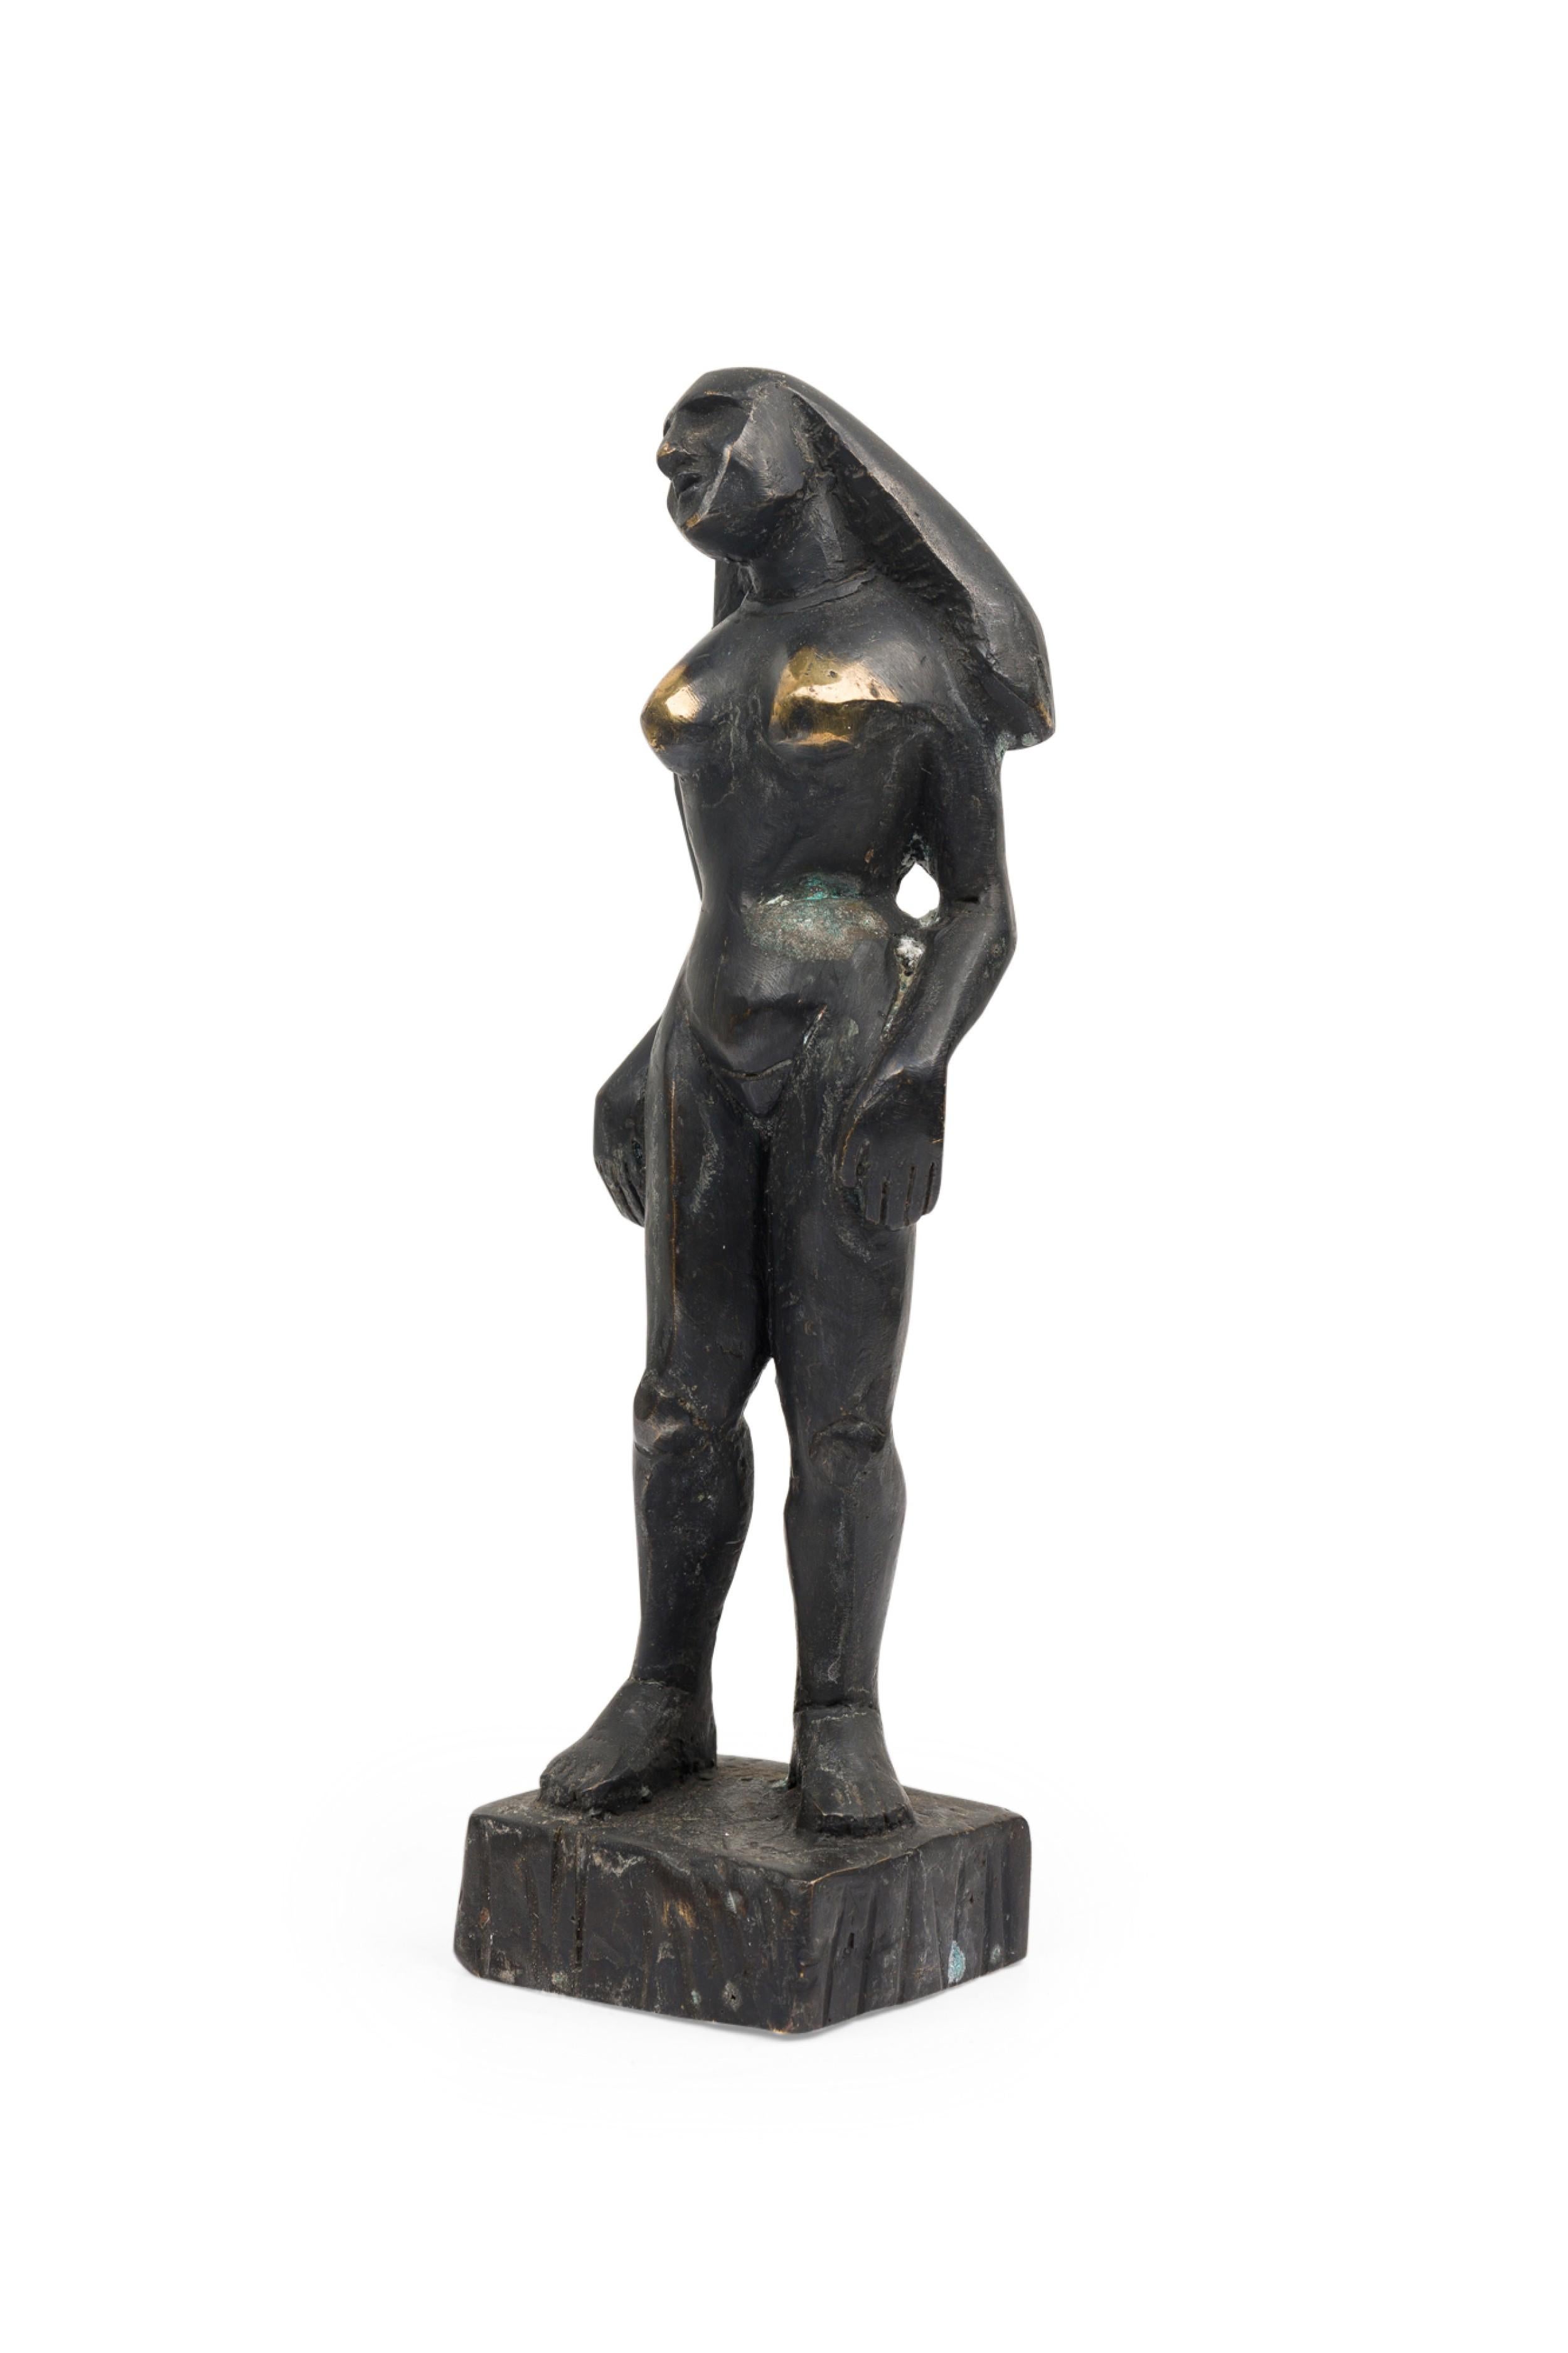 Sculpture figurative contemporaine en bronze forgé à la main, d'inspiration brutaliste, en position debout et inactive, patinée à l'ébonite. (PRIX CHACUN) (